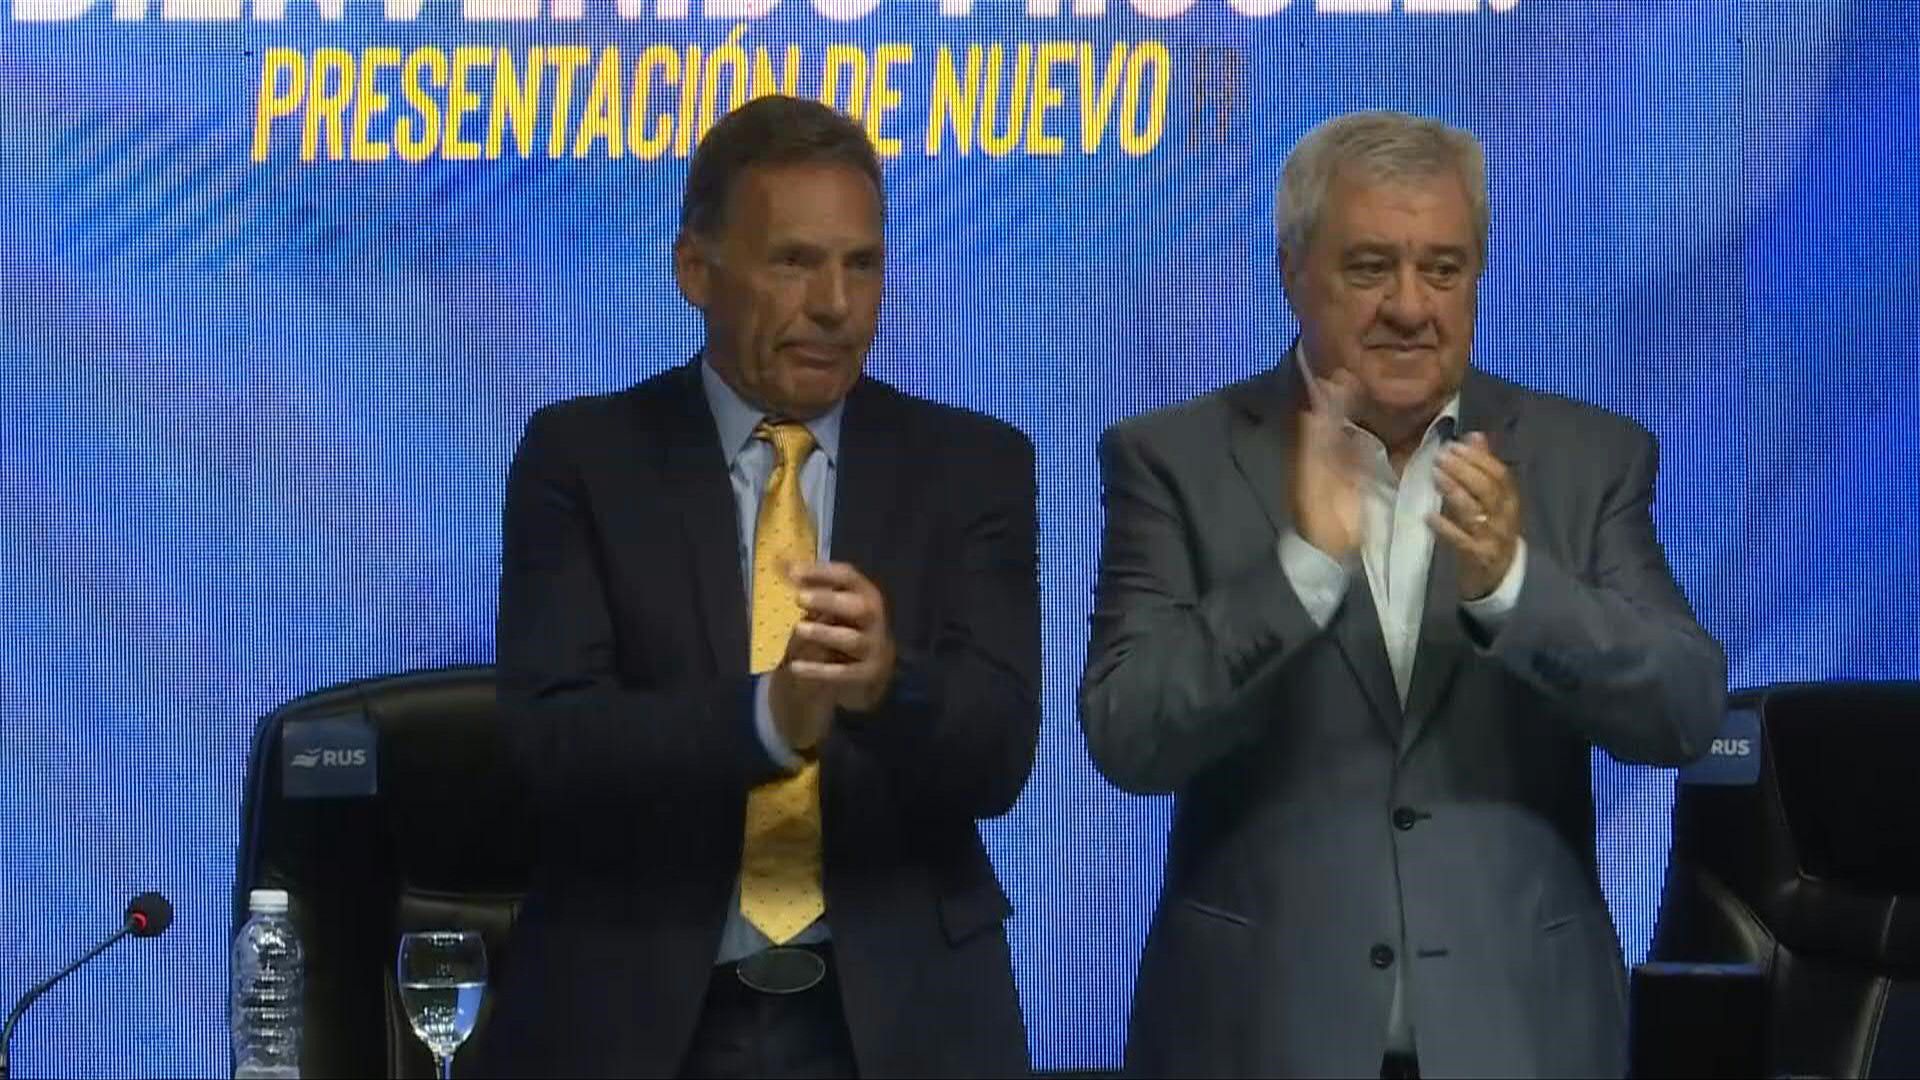 El entrenador Miguel Ángel Russo vuelve a dirigir al argentino Boca Juniors después de doce temporadas, con el impulso de su exdirigido Juan Román Riquelme convertido en vicepresidente segundo de la entidad ‘xeneize’, anunció este lunes el club.